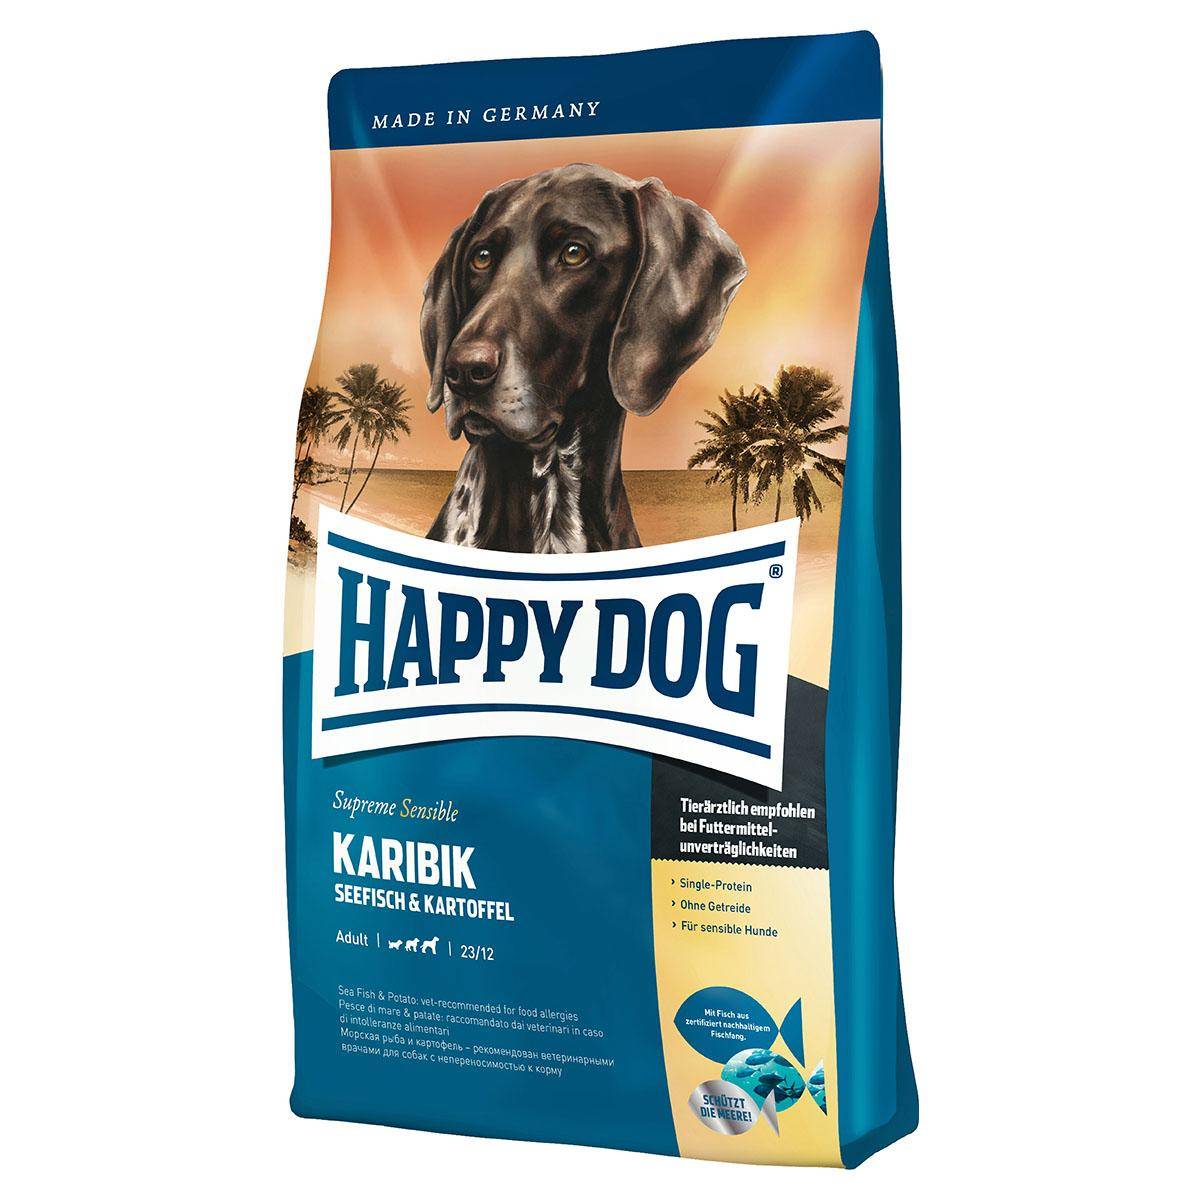 Хэппи дог (happy dog): состав, ассортимент и стоимость продукции